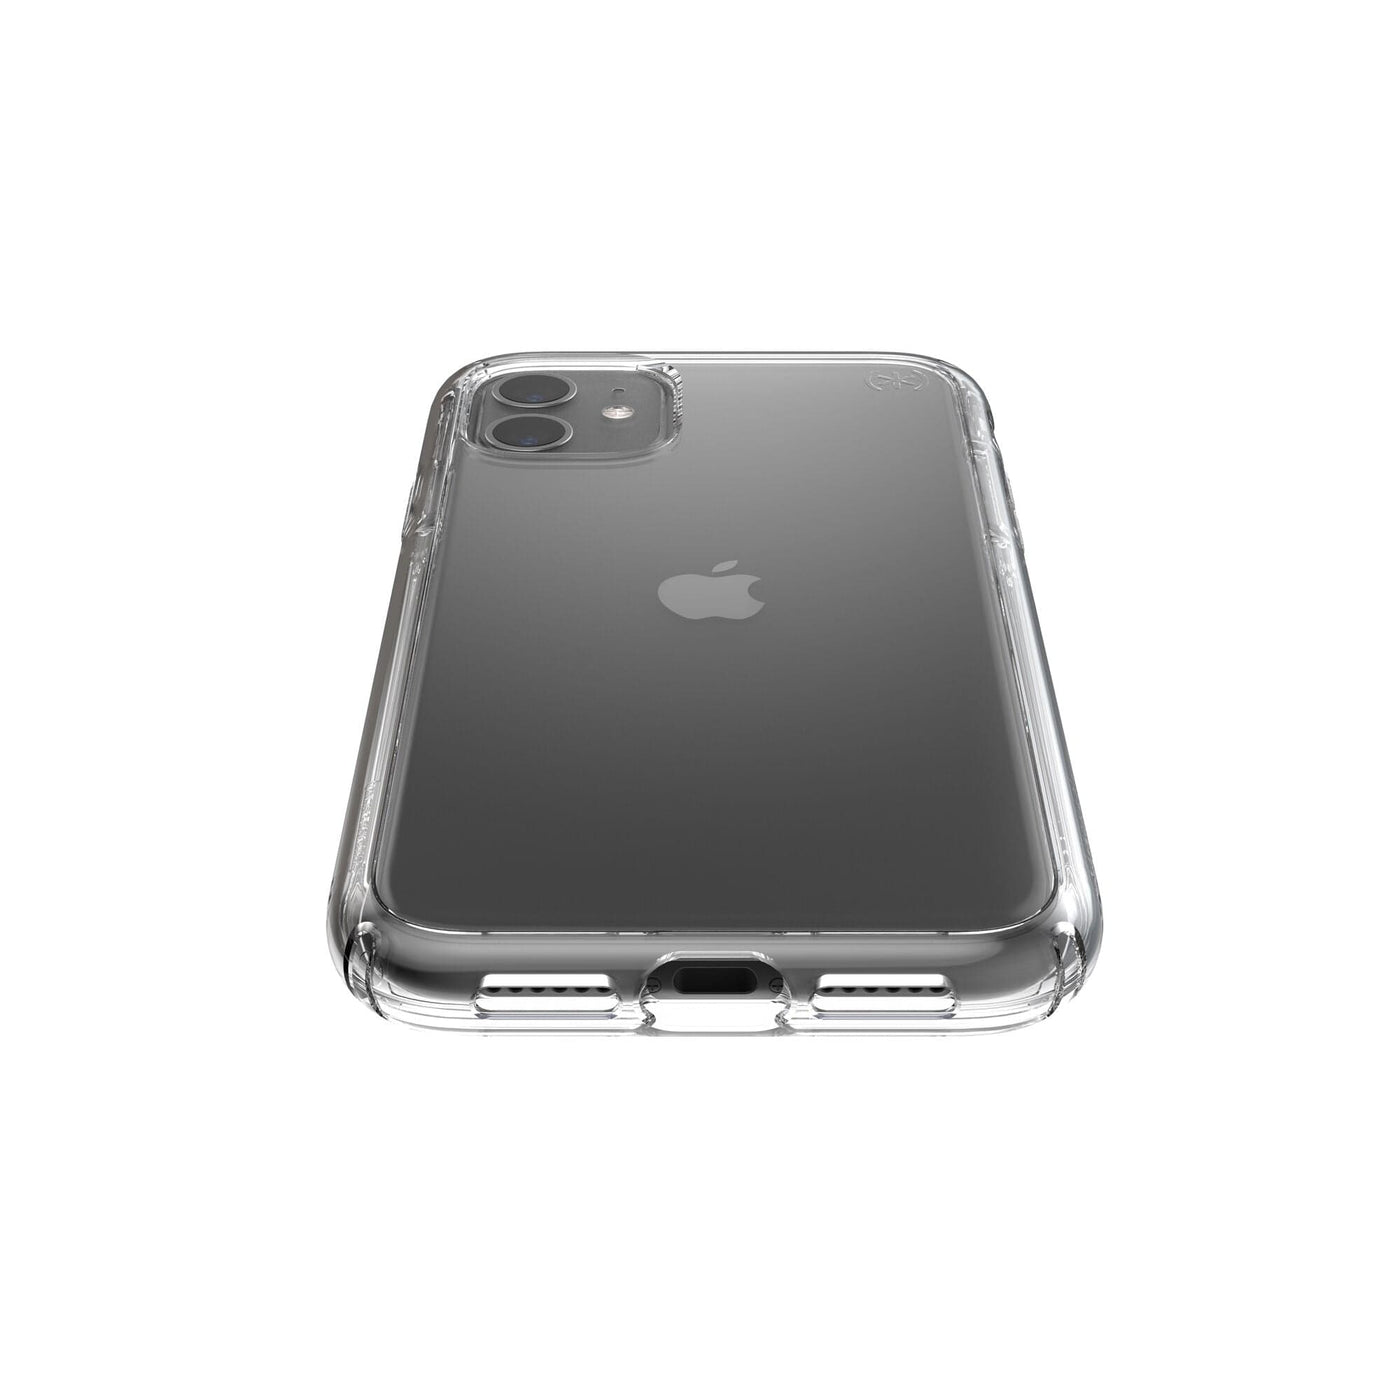 Best iPhone 11 cases